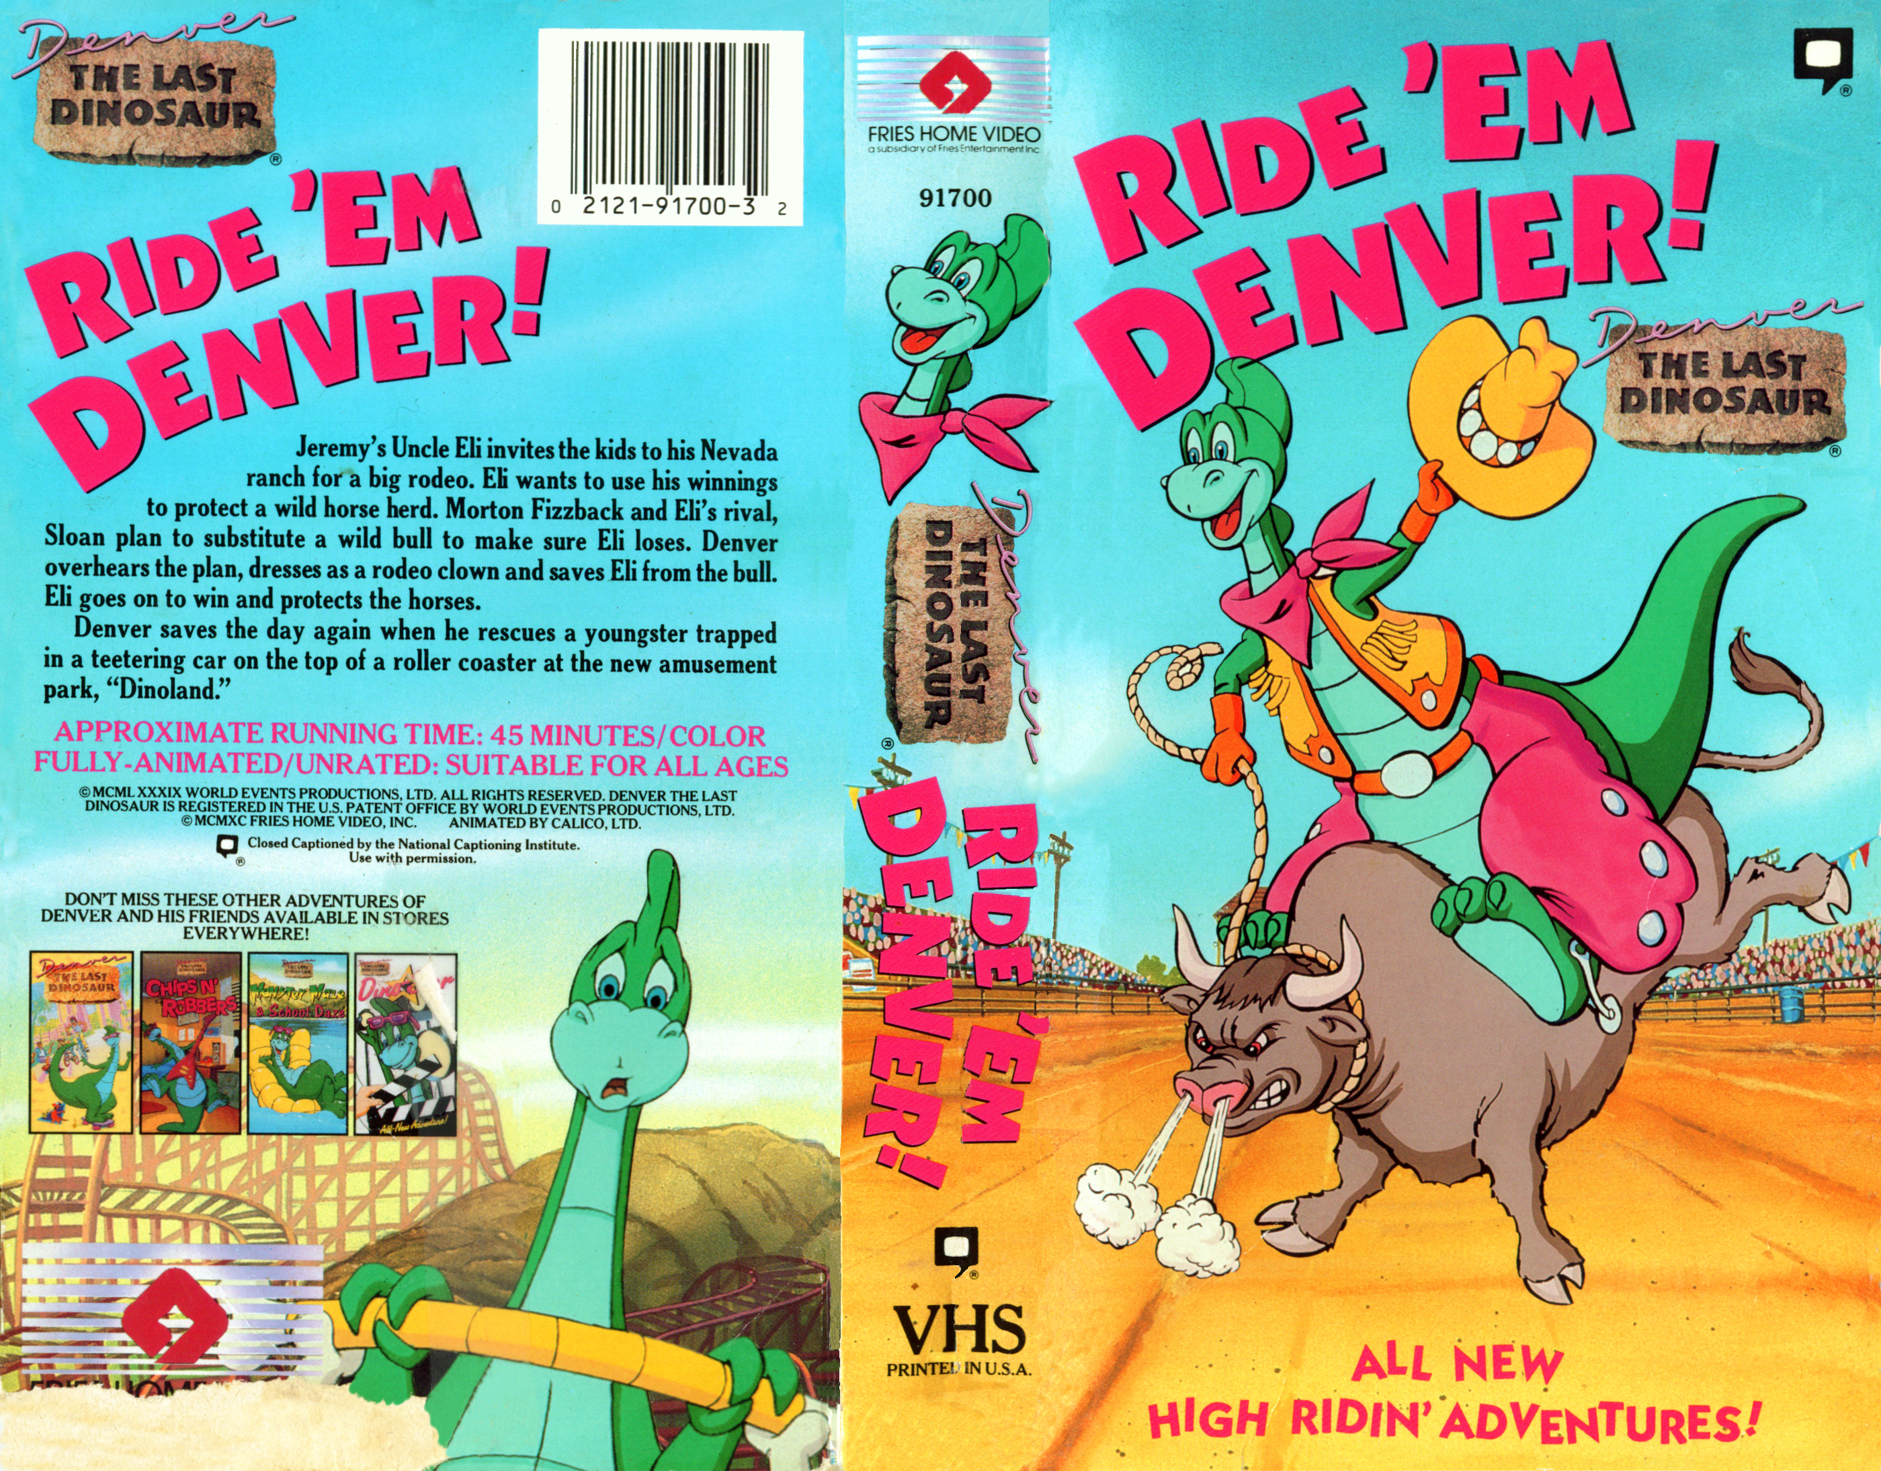 September 12 2011 VHS cover scan - click for high res version denver the la...